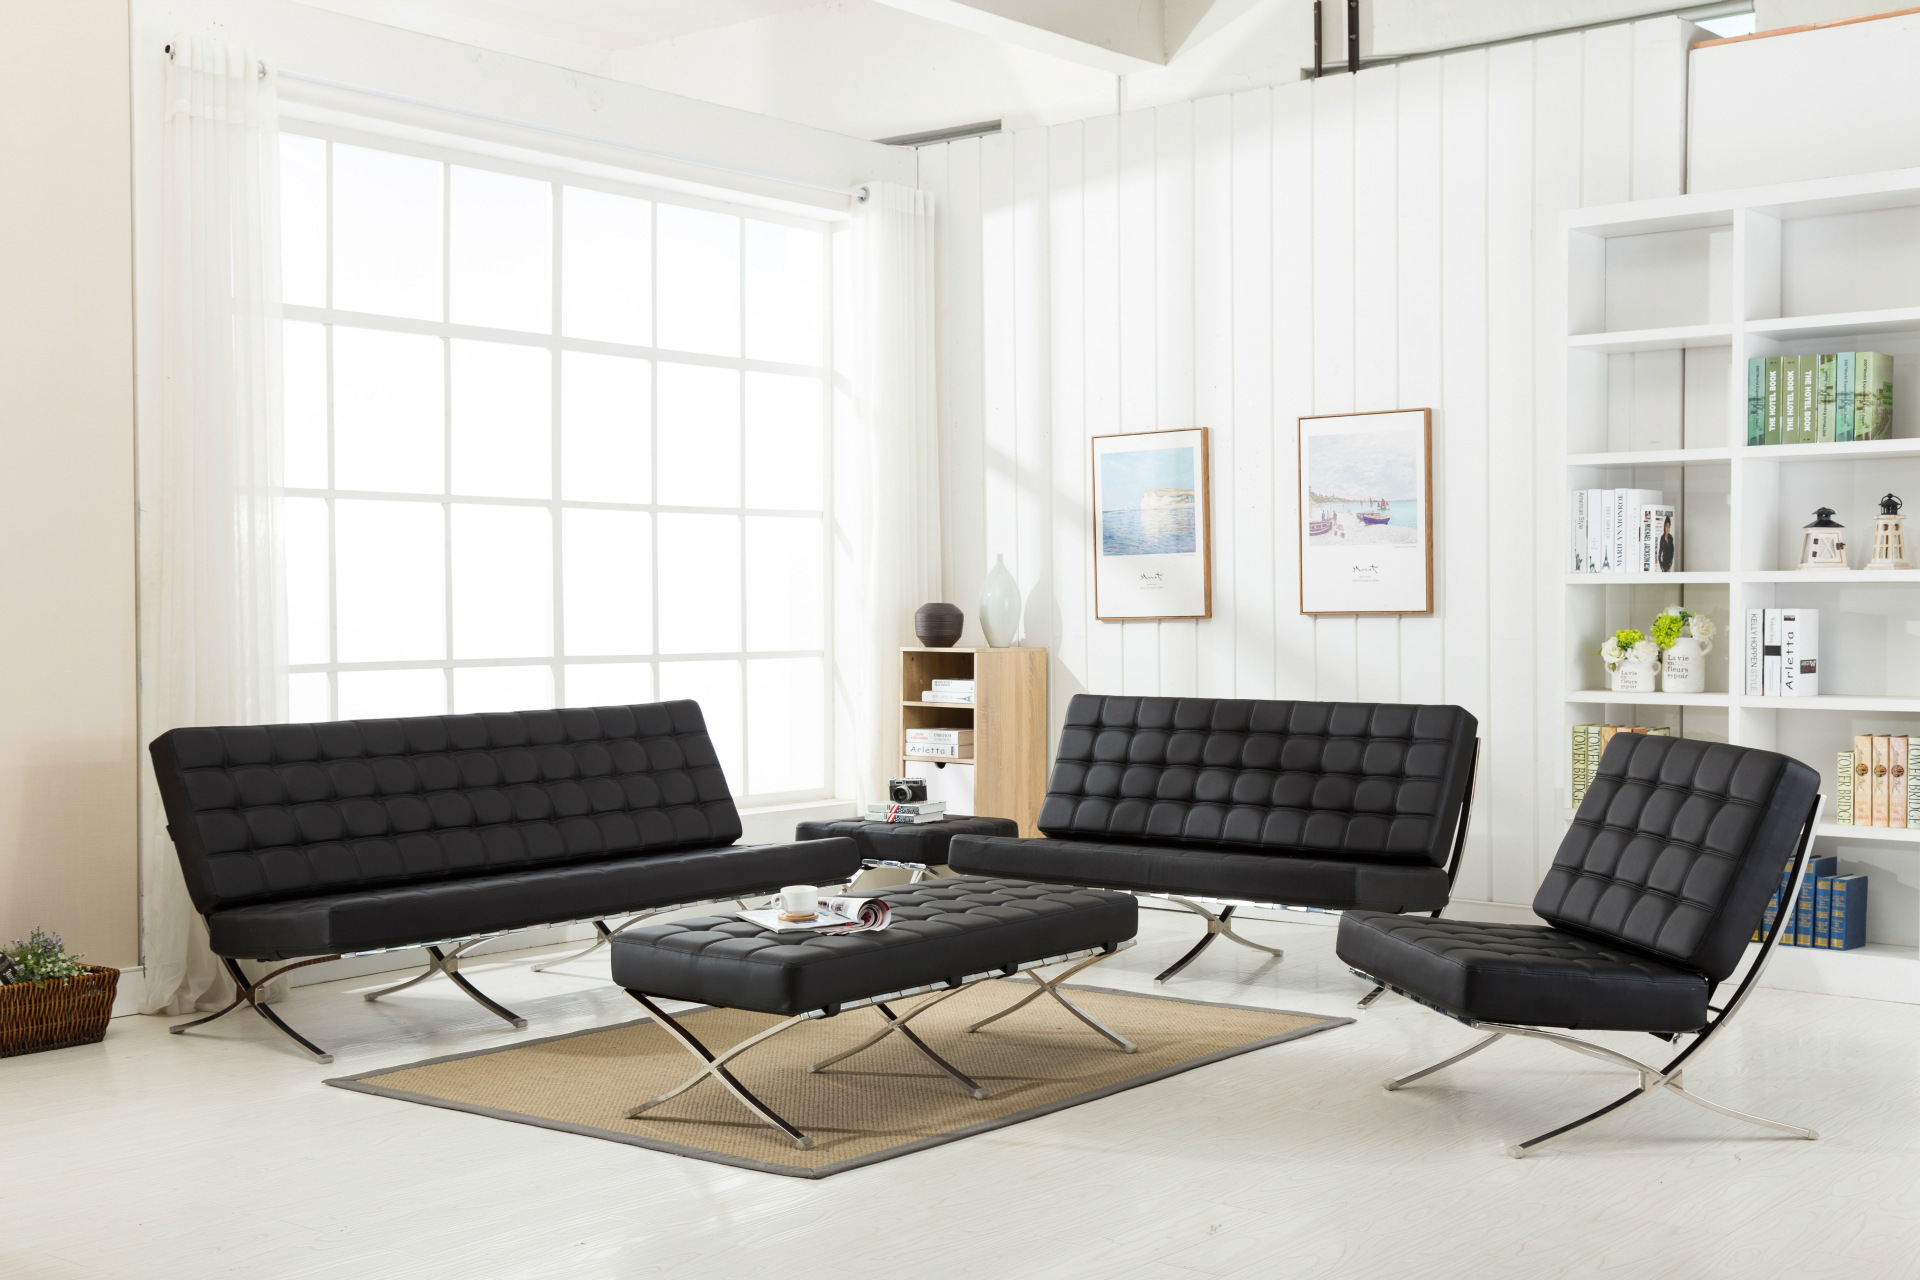 巴塞罗那沙发 休闲椅 沙发不锈钢架子办公沙发 休闲沙发示例图8